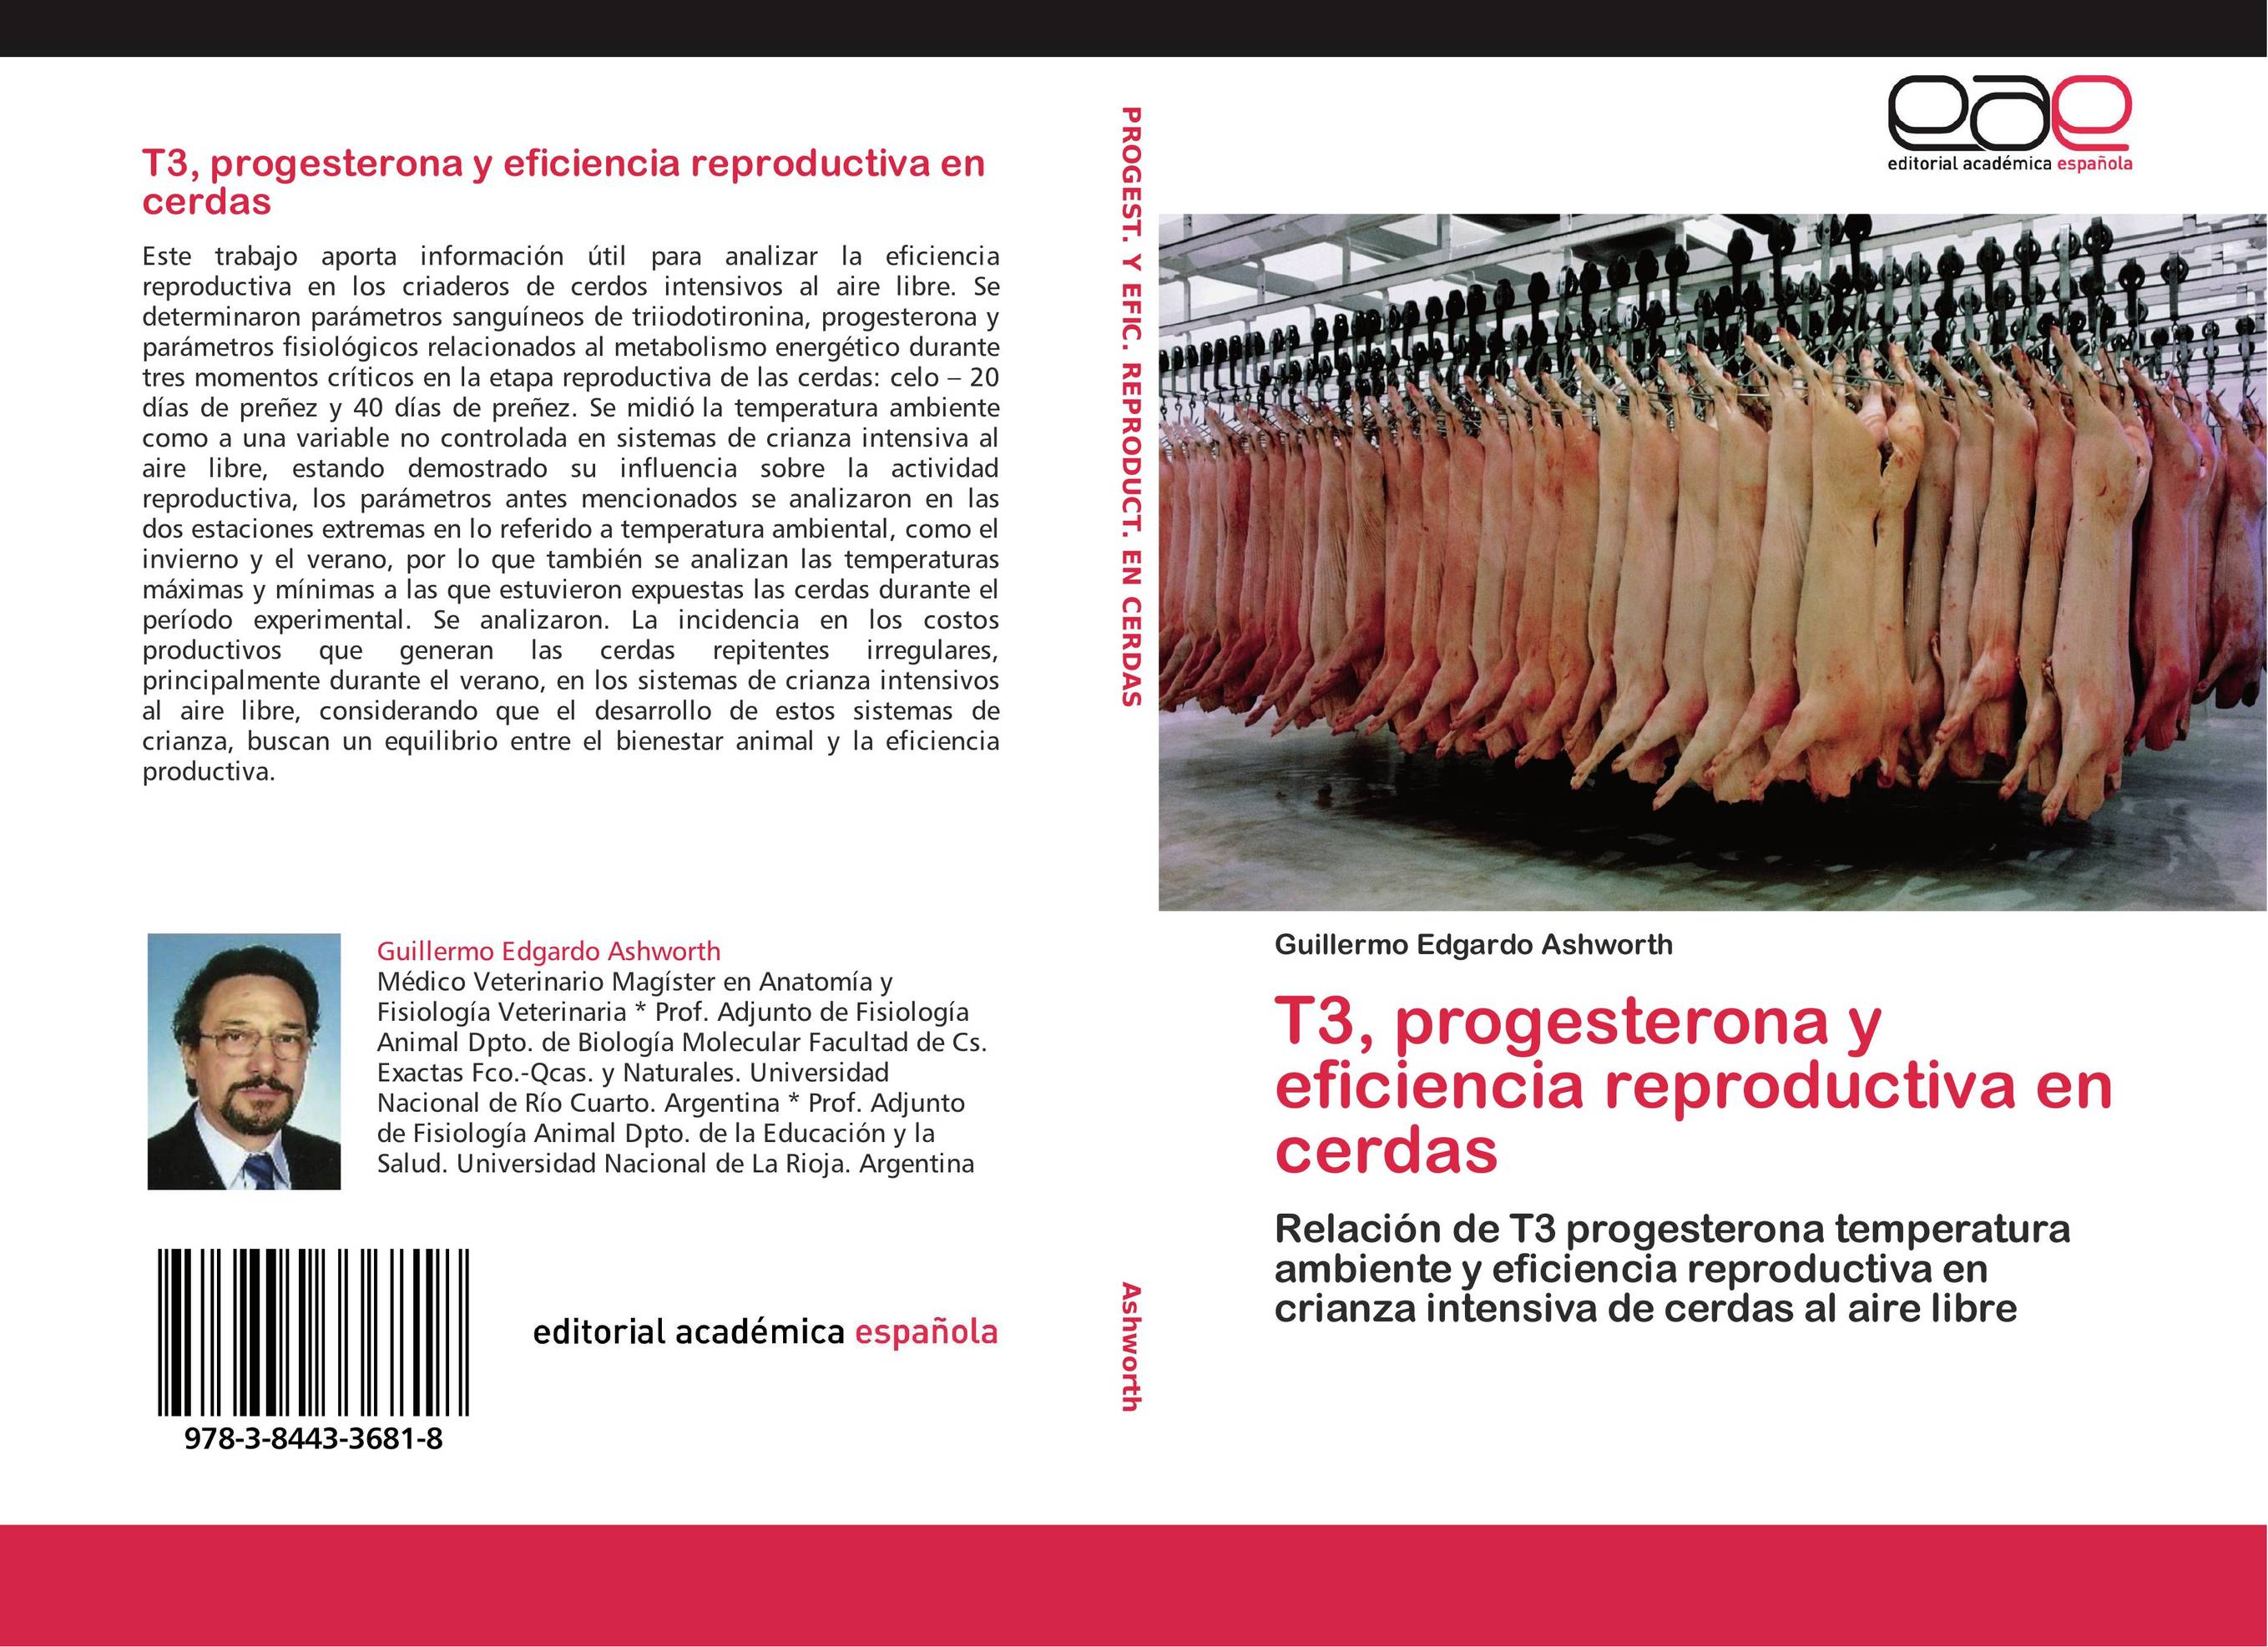 T3, progesterona y eficiencia reproductiva en cerdas